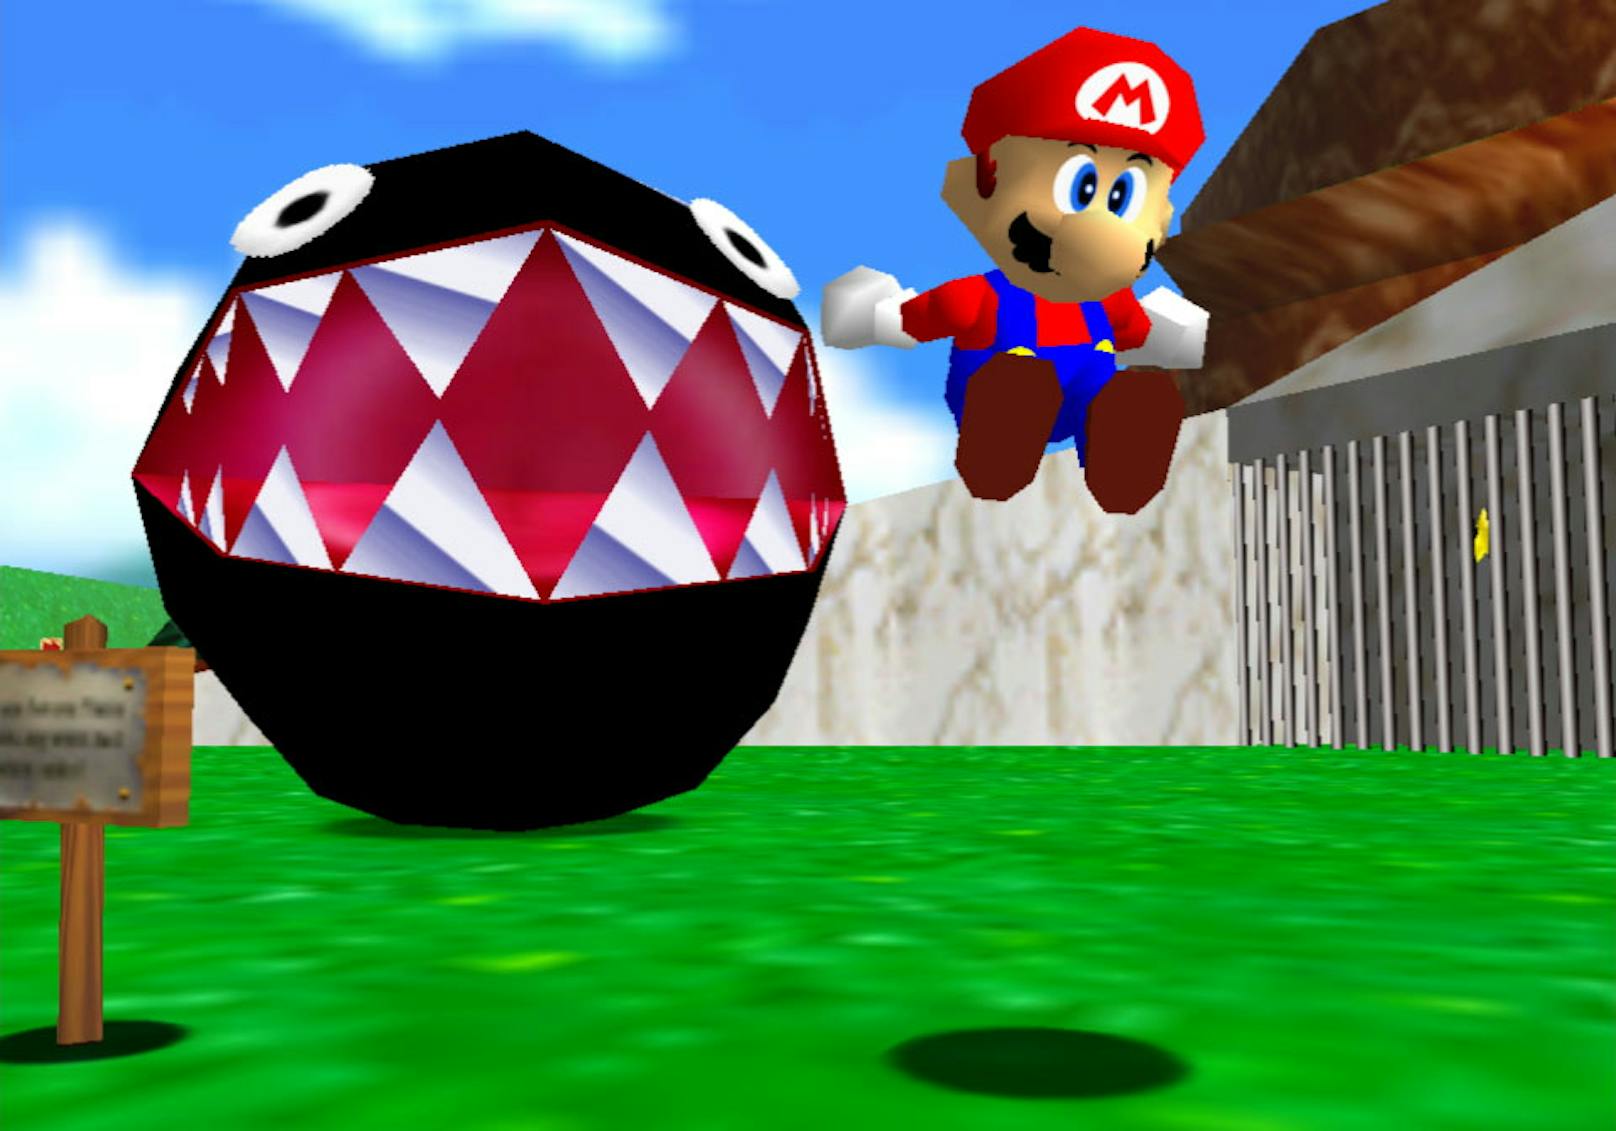 "Super Mario 64" gehört wohl zu den einflussreichsten Games der Geschichte. Nintendo definierte im Jahr 1996, wie sich ein Jump-and-Run im dreidimensionalen Raum spielen soll. Das funktionierte beim ersten Anlauf schon hervorragend, auch wenn die Kamerasteuerung mit heutigen Augen betrachtet etwas mühsam daherkommt.